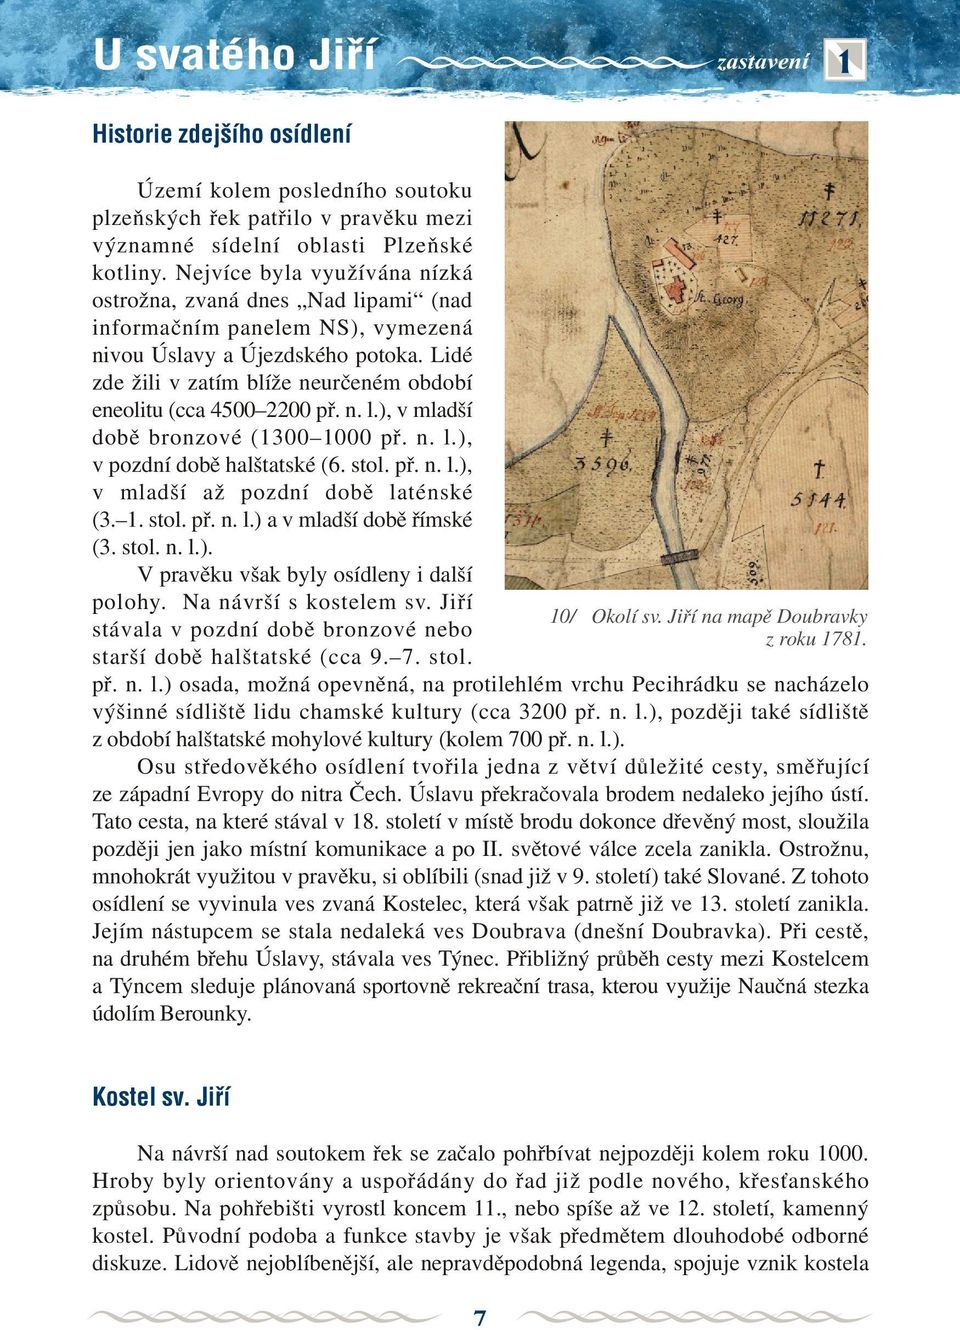 Lidé zde žili v zatím blíže neurèeném období eneolitu (cca 4500 2200 pø. n. l.), v mladší dobì bronzové (1300 1000 pø. n. l.), v pozdní dobì halštatské (6. stol. pø. n. l.), v mladší až pozdní dobì laténské (3.